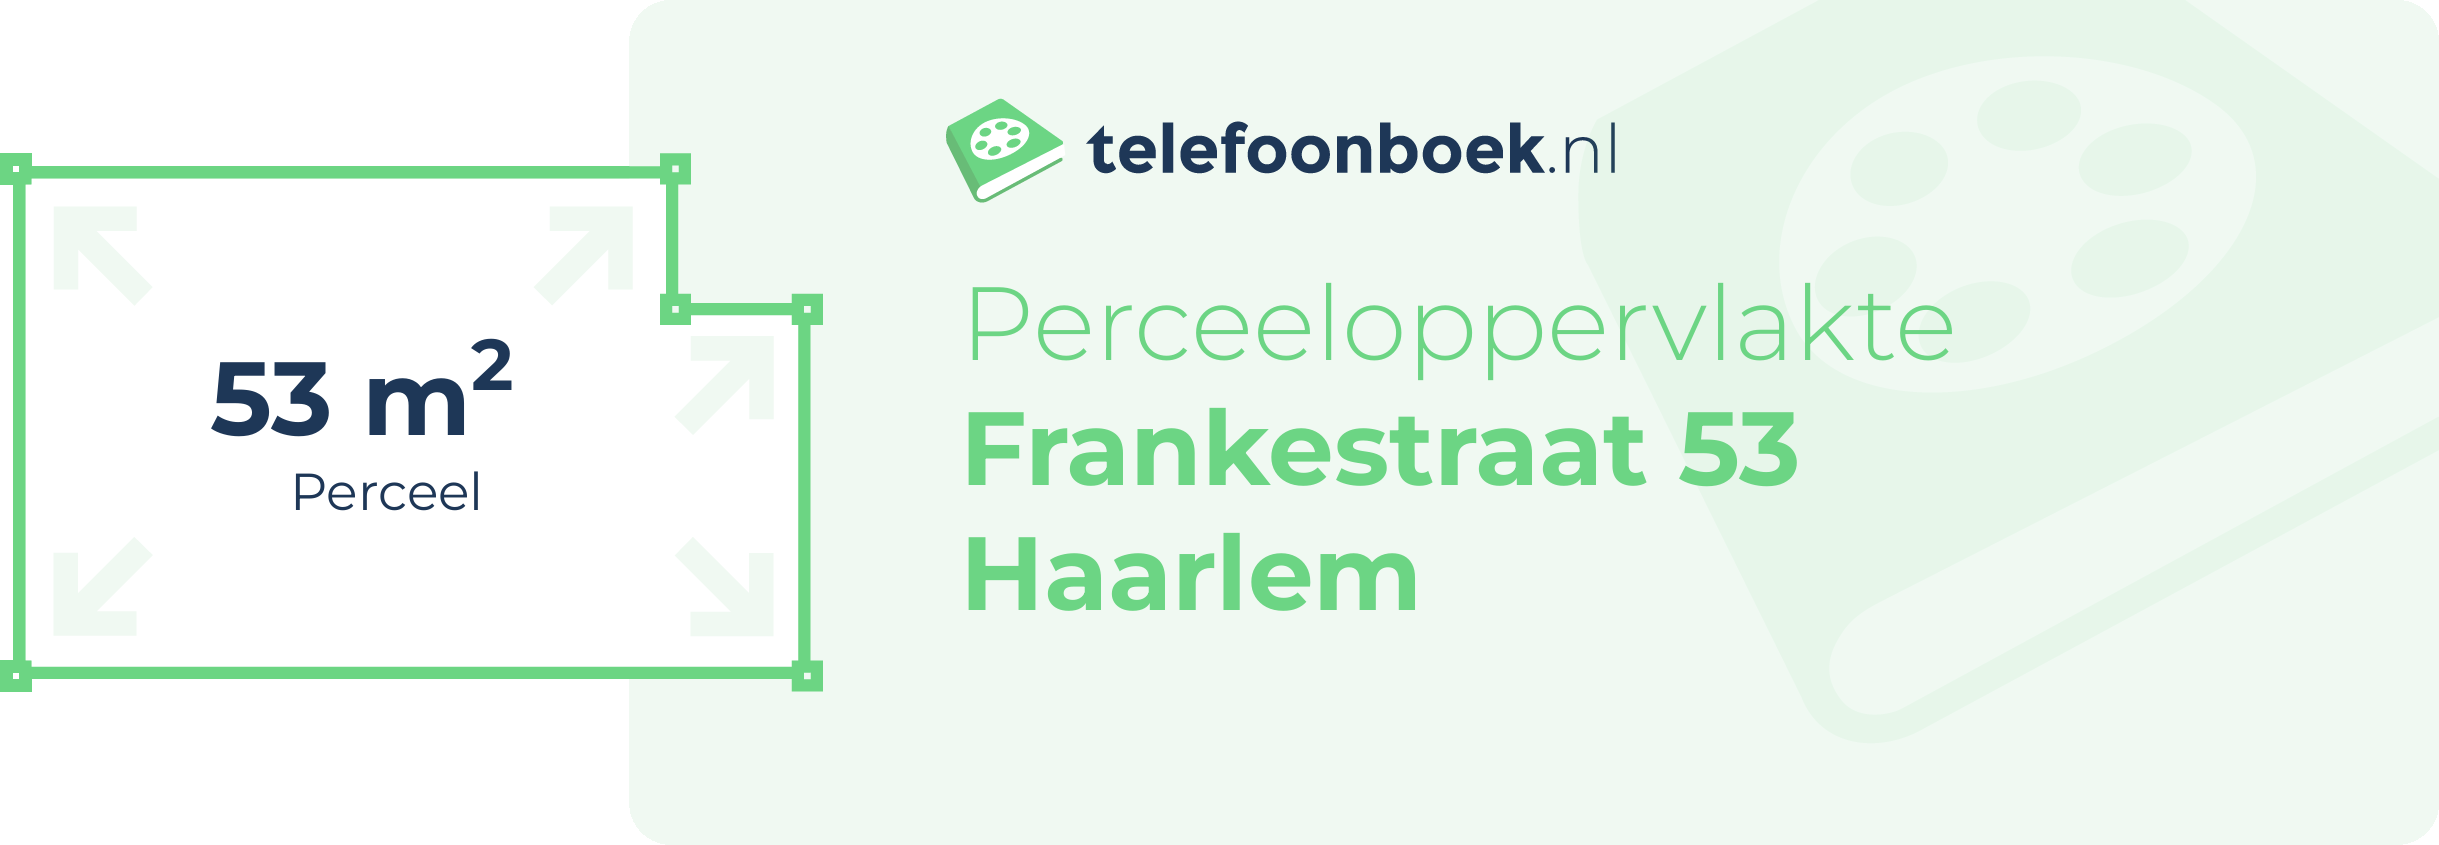 Perceeloppervlakte Frankestraat 53 Haarlem